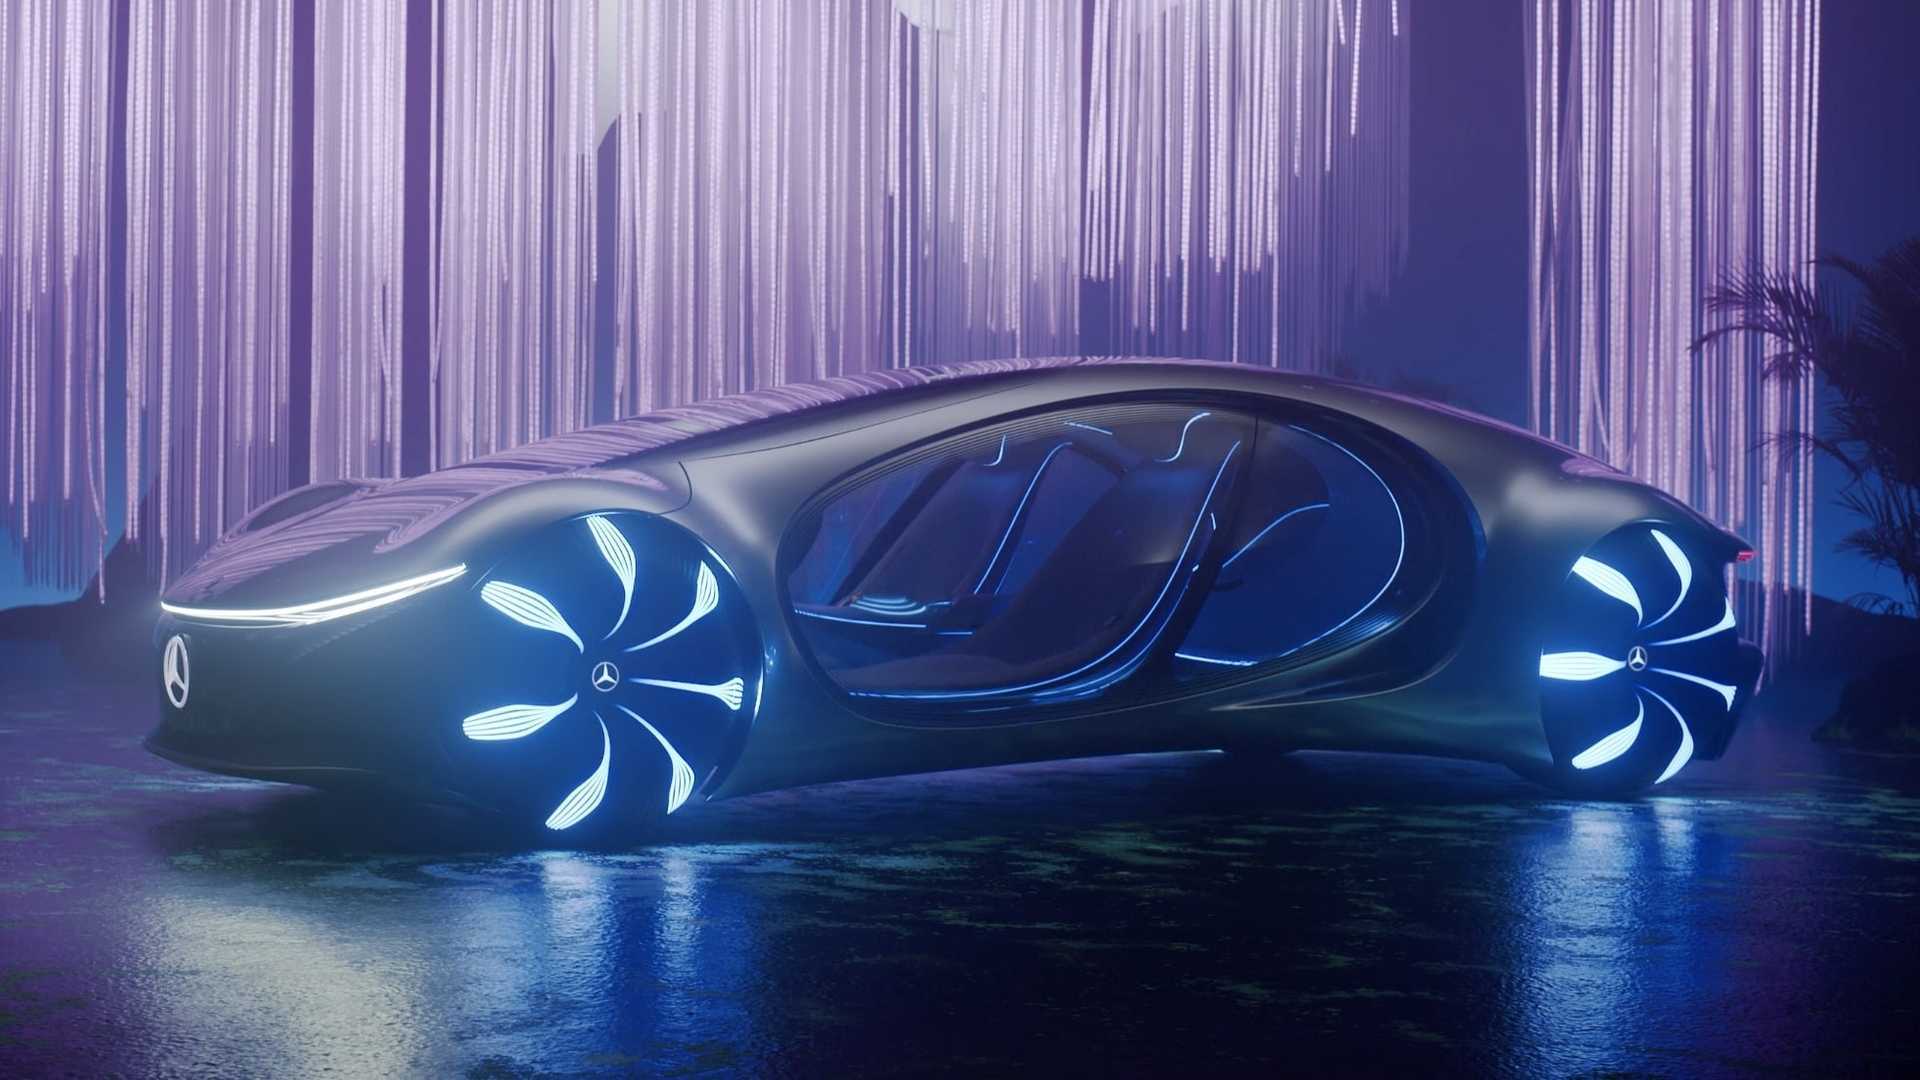 CES: Mercedes Benz Showcases Their Concept Vision AVTR